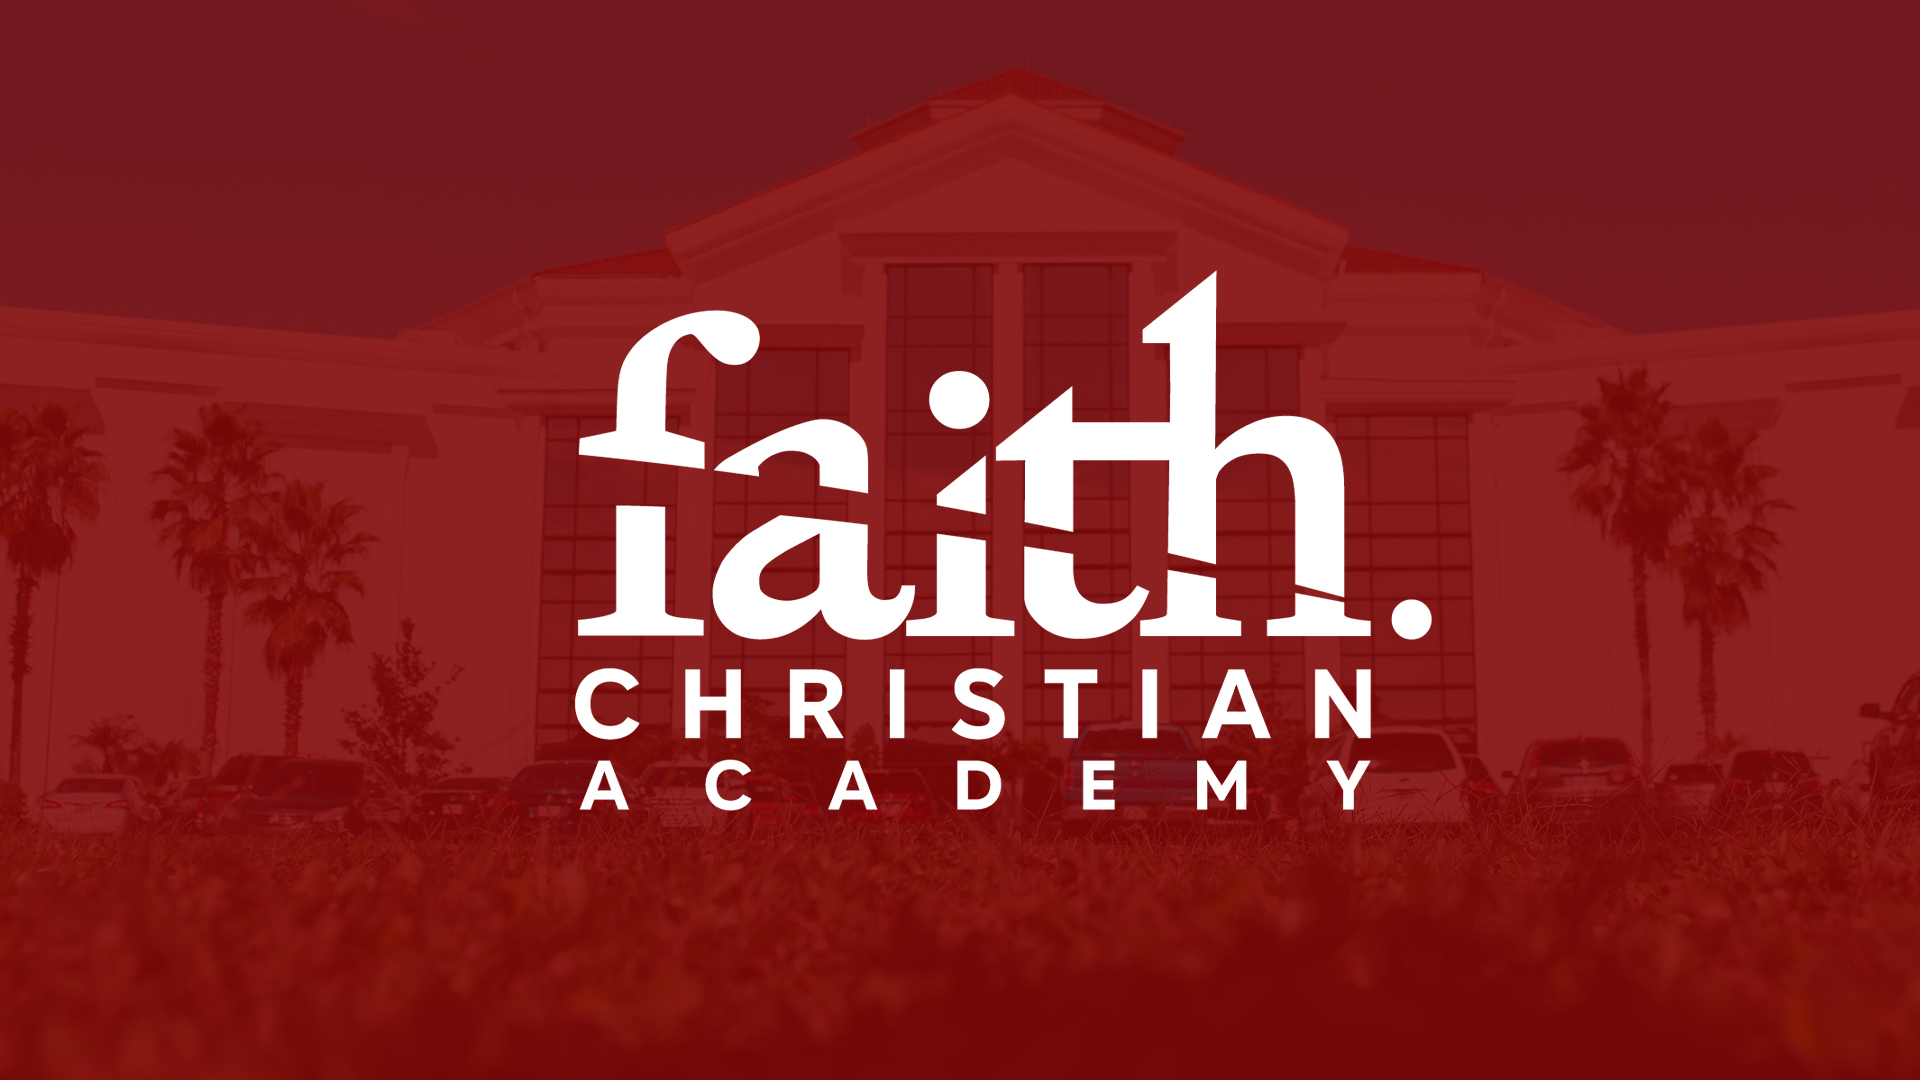 Faith Christian Academy